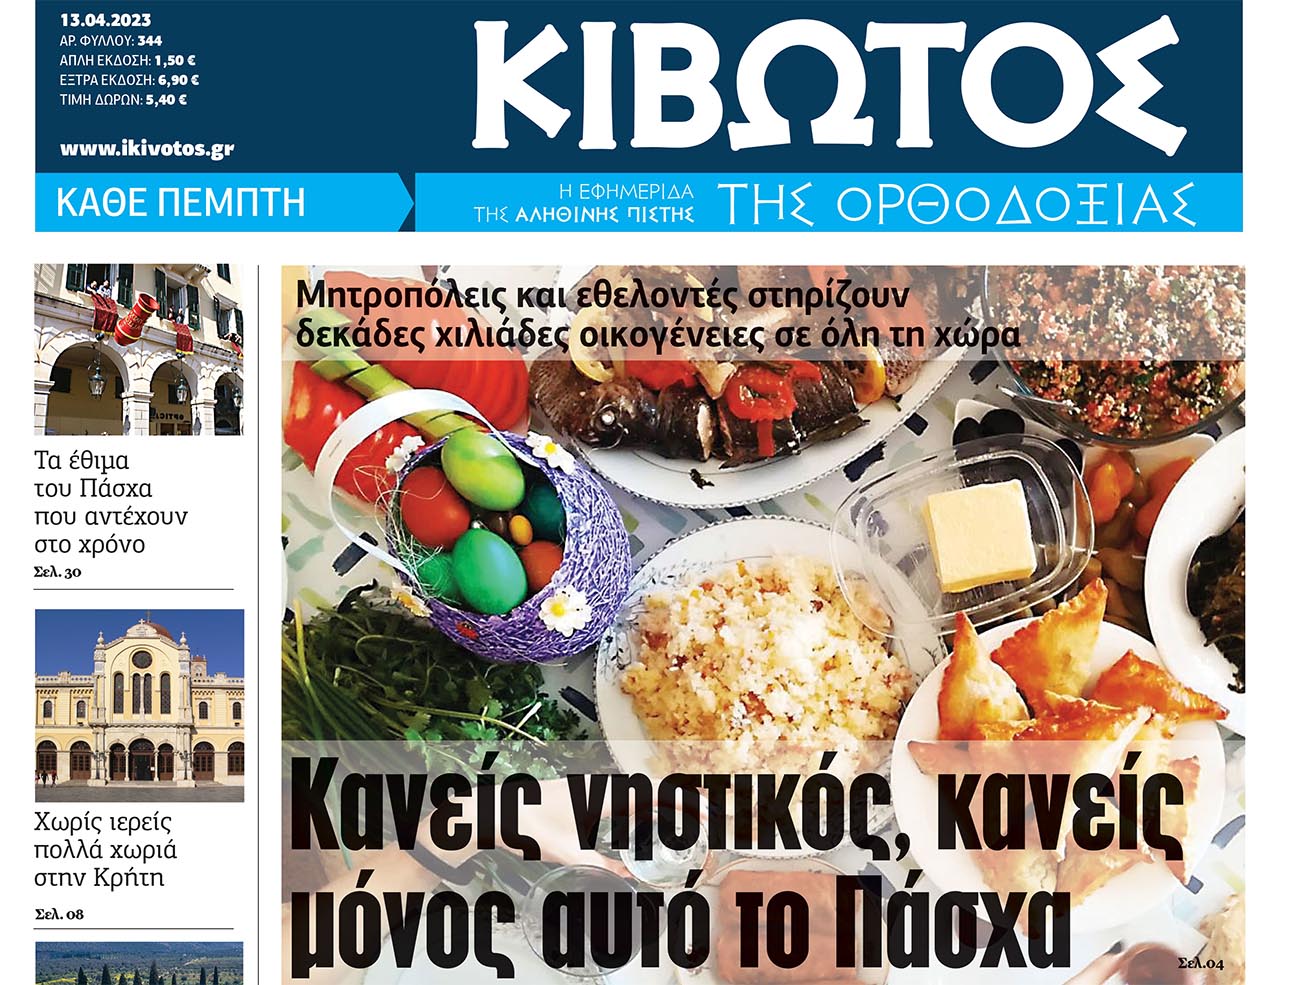 Τη Μεγάλη Πέμπτη, 13 Απριλίου, κυκλοφορεί το νέο φύλλο της Εφημερίδας «Κιβωτός της Ορθοδοξίας»